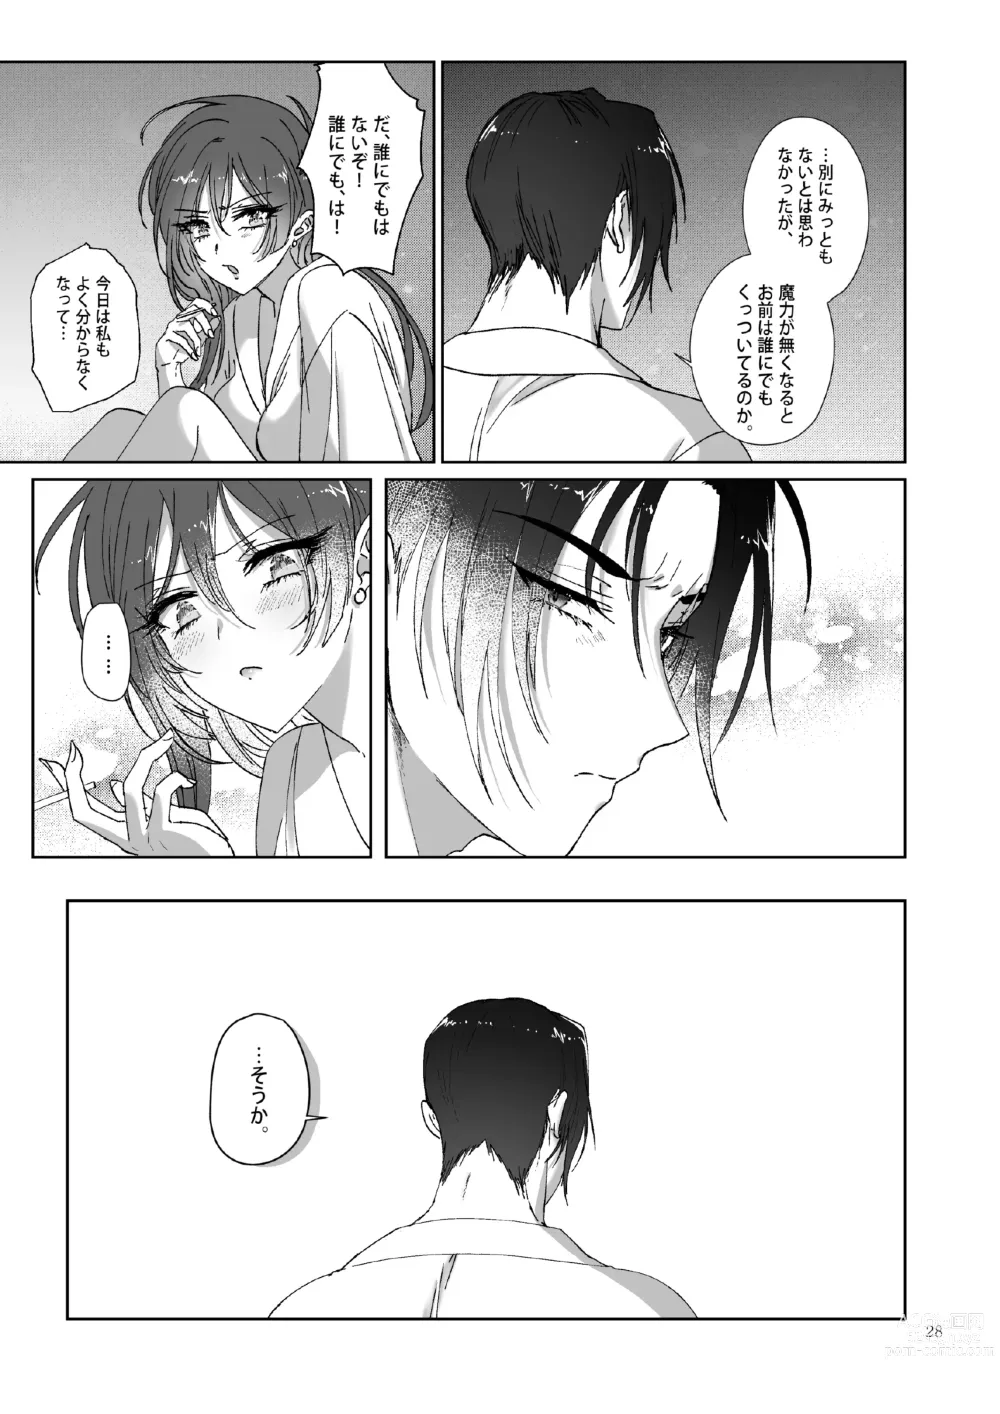 Page 28 of doujinshi Kπ ~Kouankeisatsu to Ikoku no Majo no Futari~